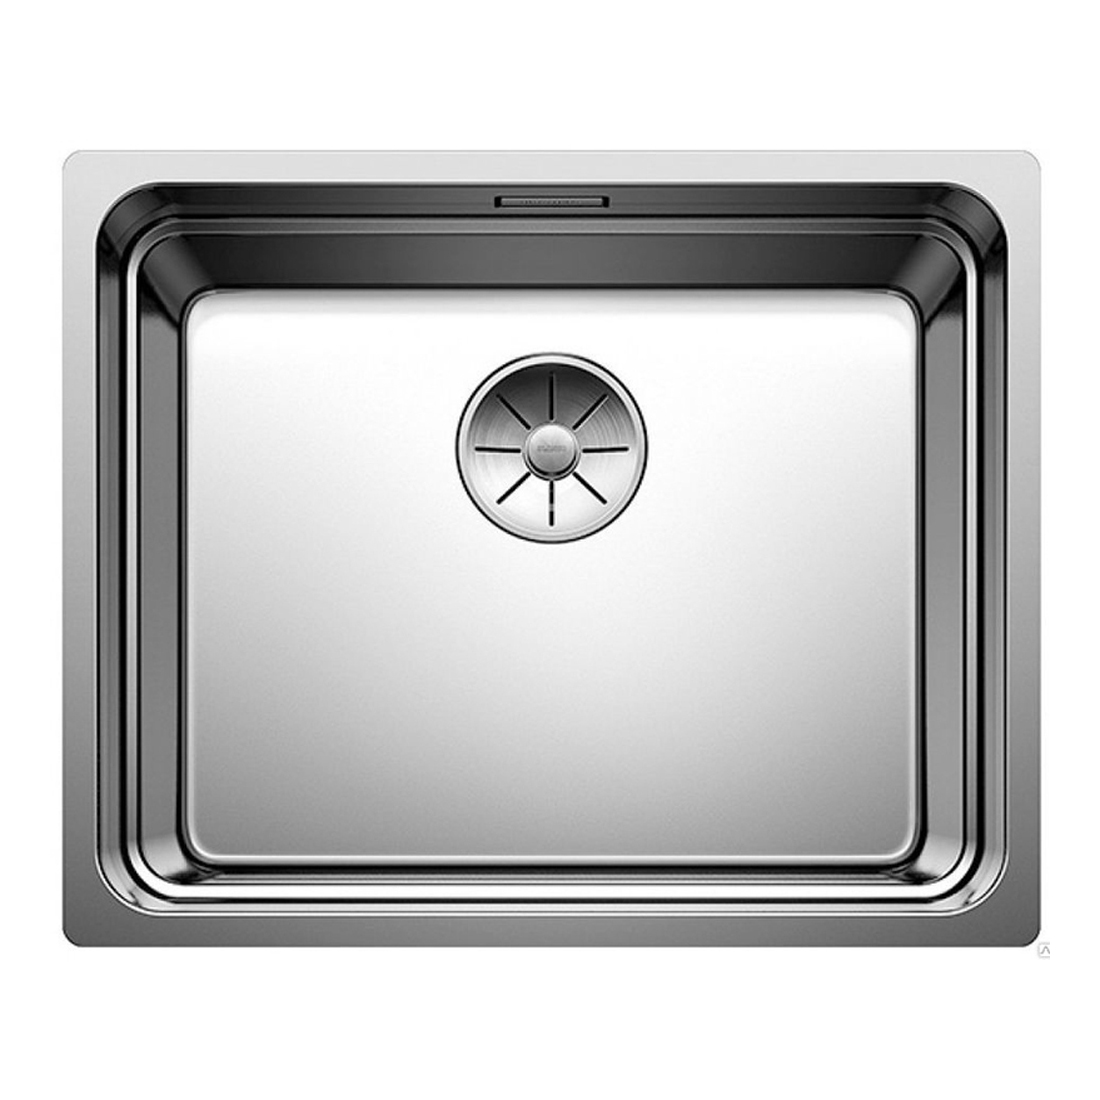 Кухонная мойка Blanco Etagon 500-U полированная сталь кухонная мойка franke 122 0689 805 нержавеющая сталь